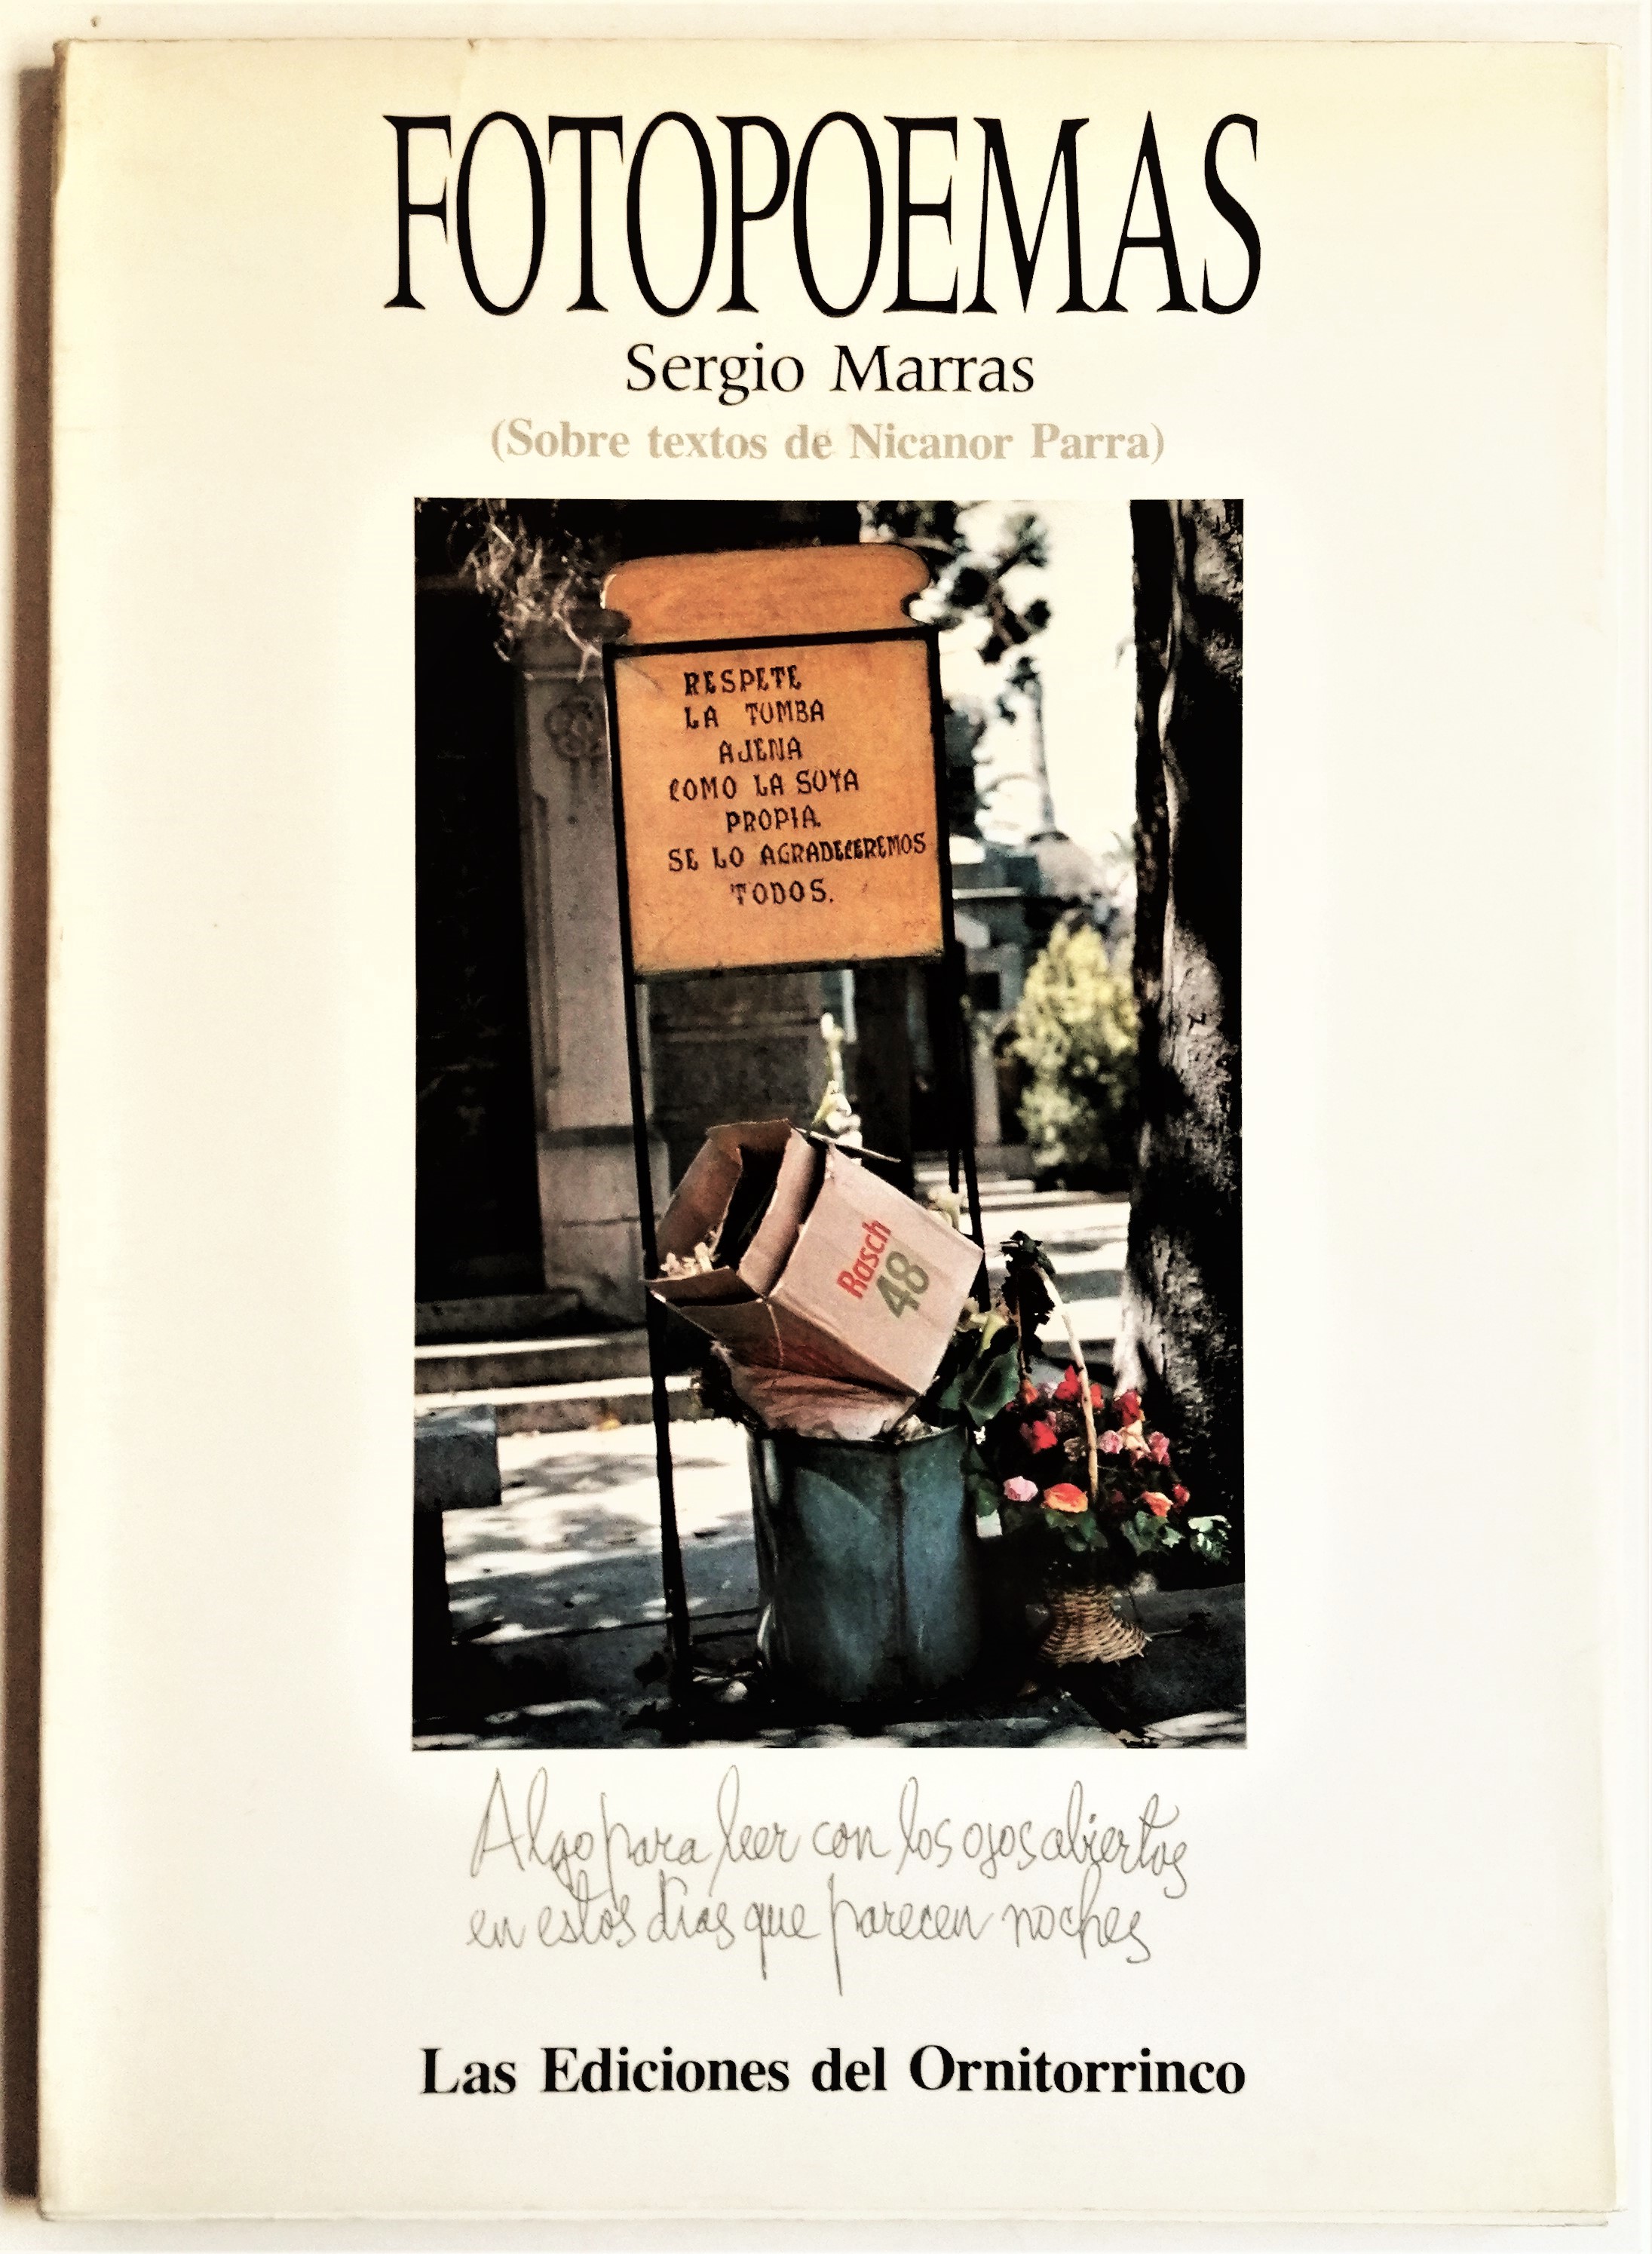 Sergio Marras - Fotopoemas (sobre textos de Nicanor Parra)